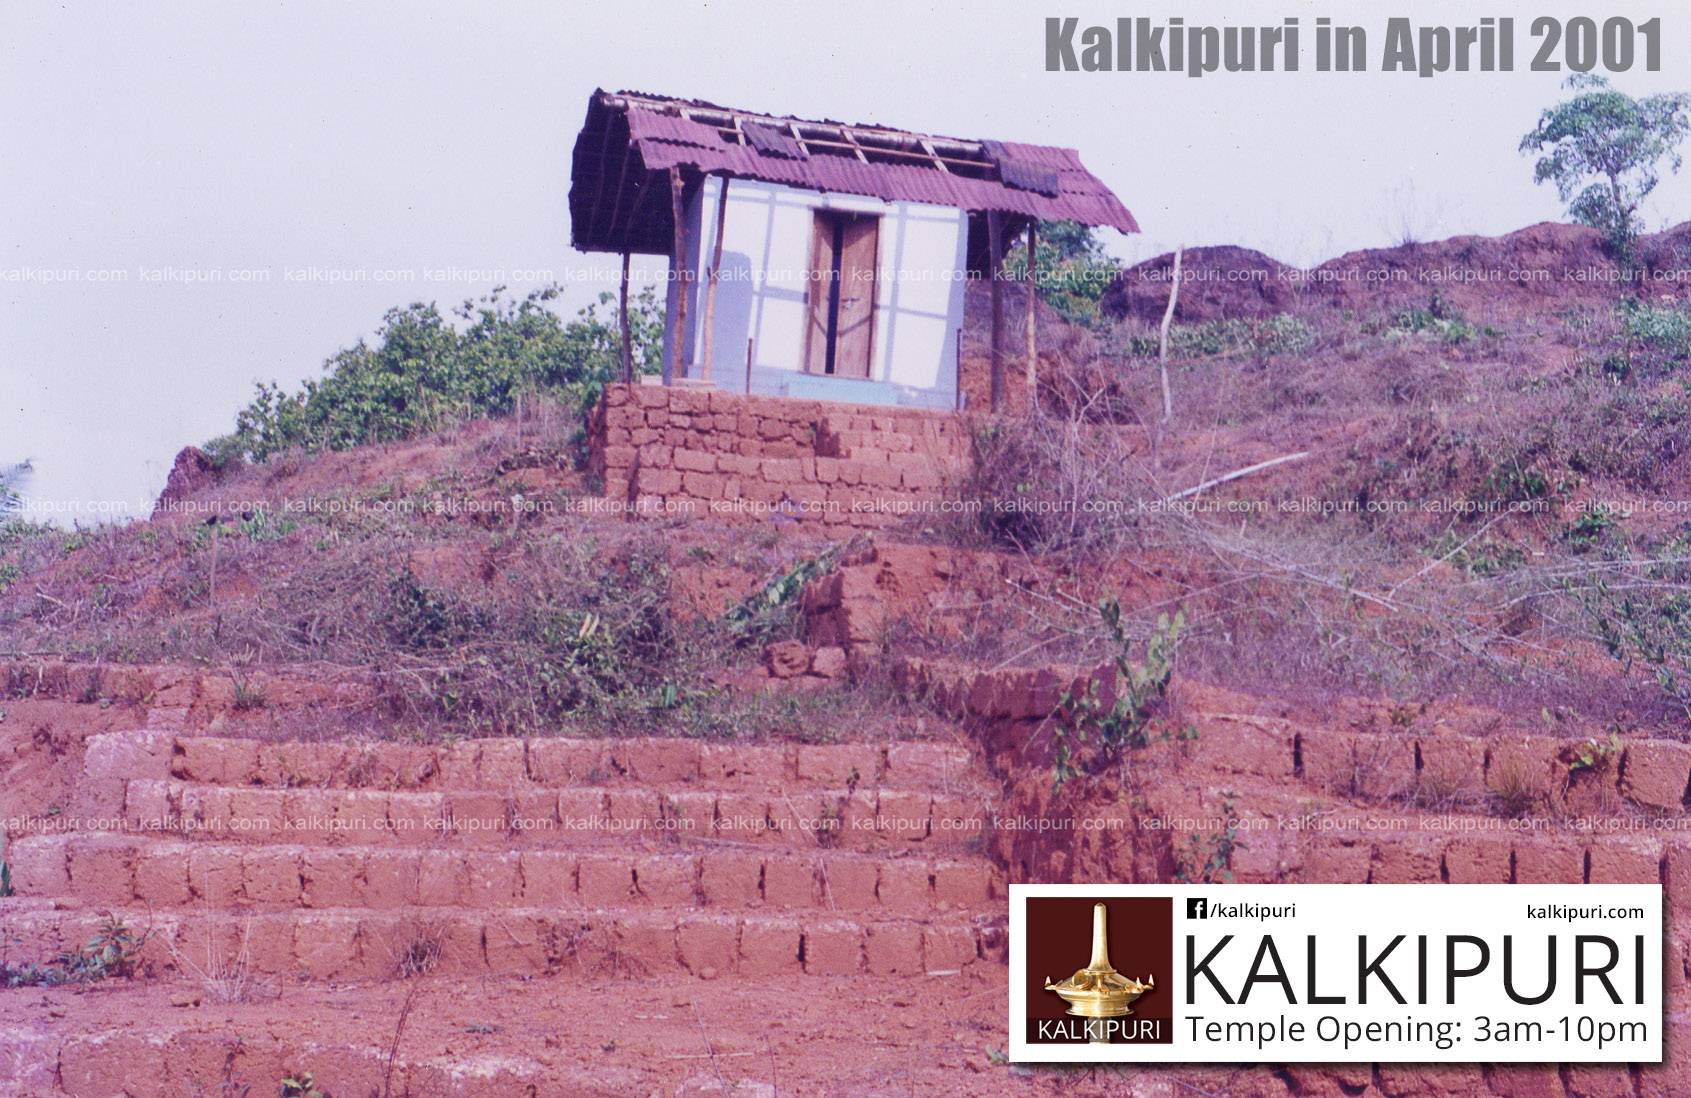 Kalkipuri Temple in 2001